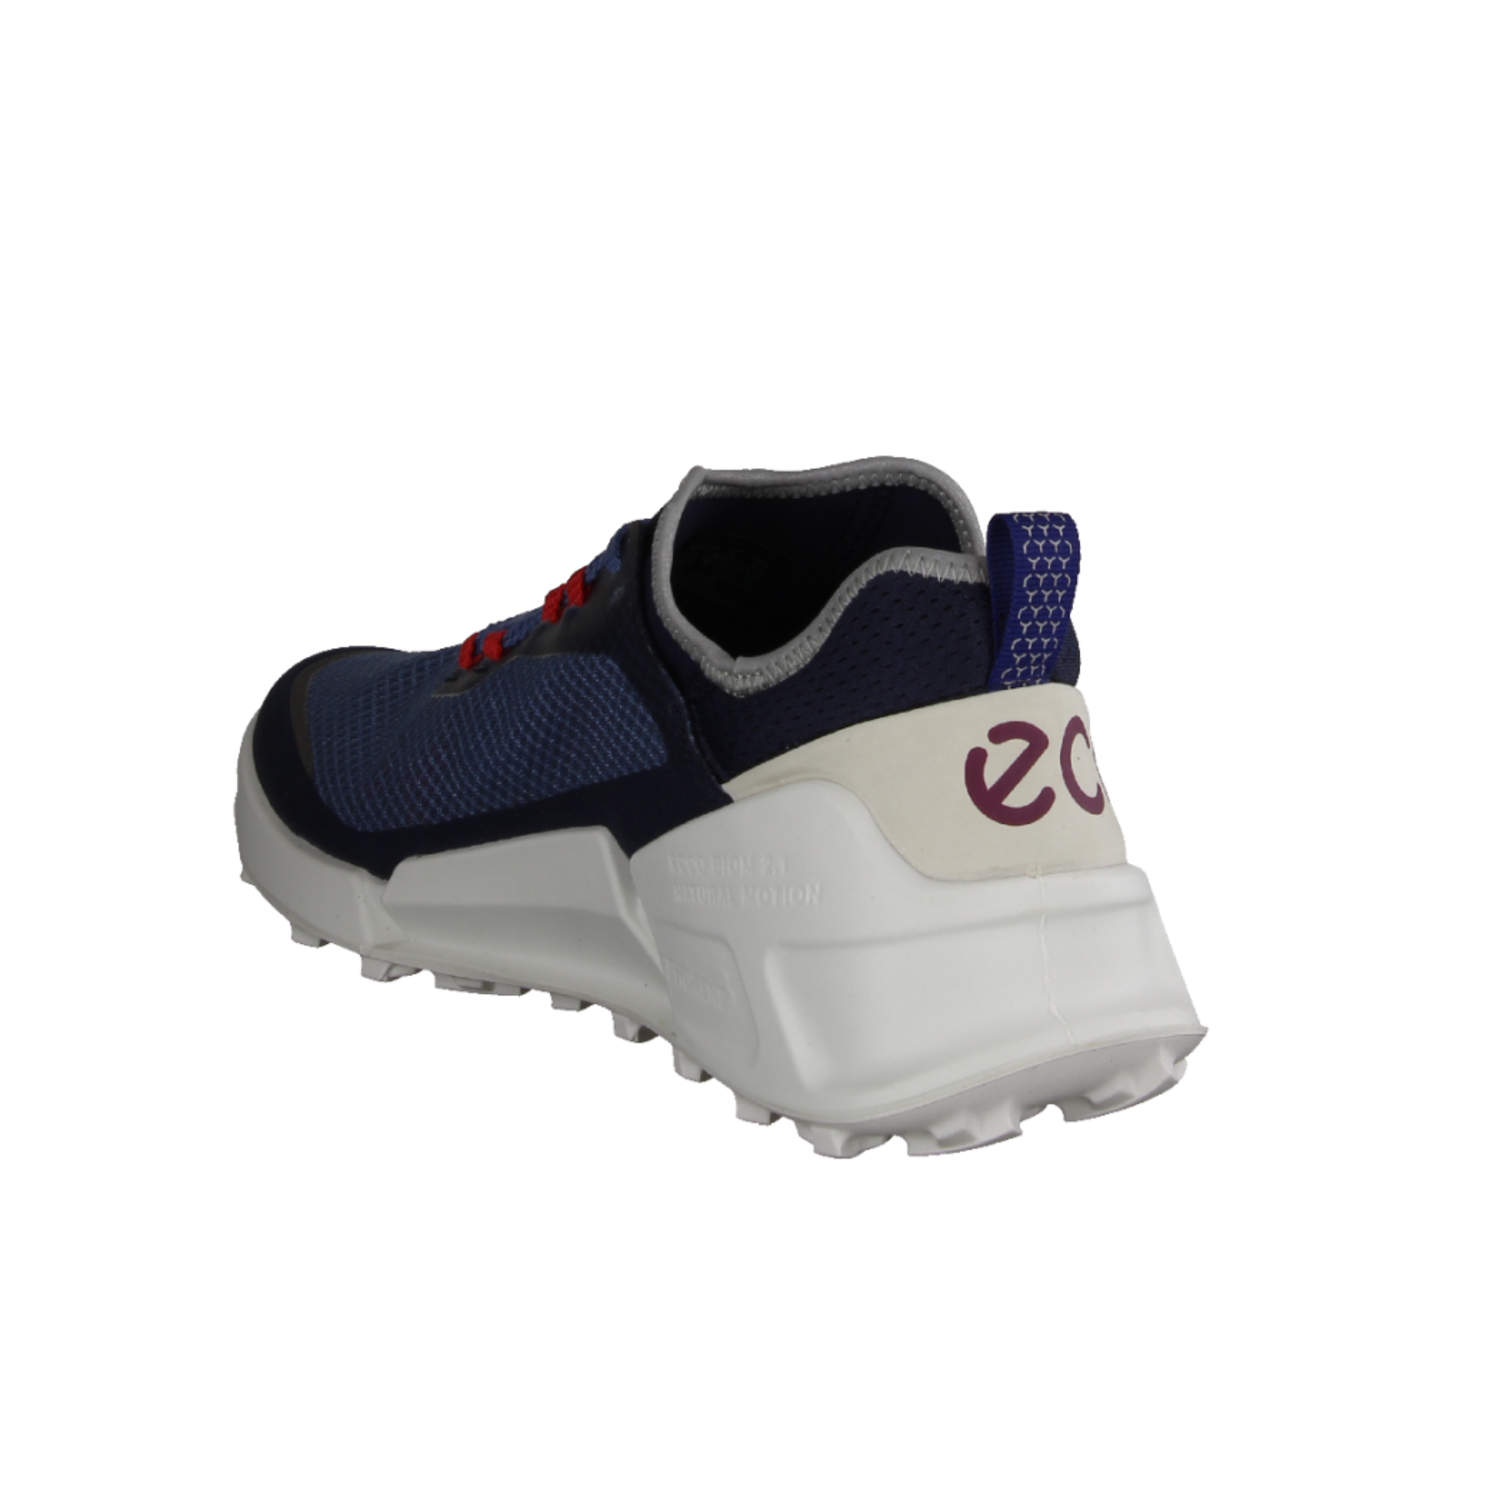 2.1 8228046059 Blue/Shadow Sneaker X Herren Biom für moderner White Country Ecco Marine/Retro M